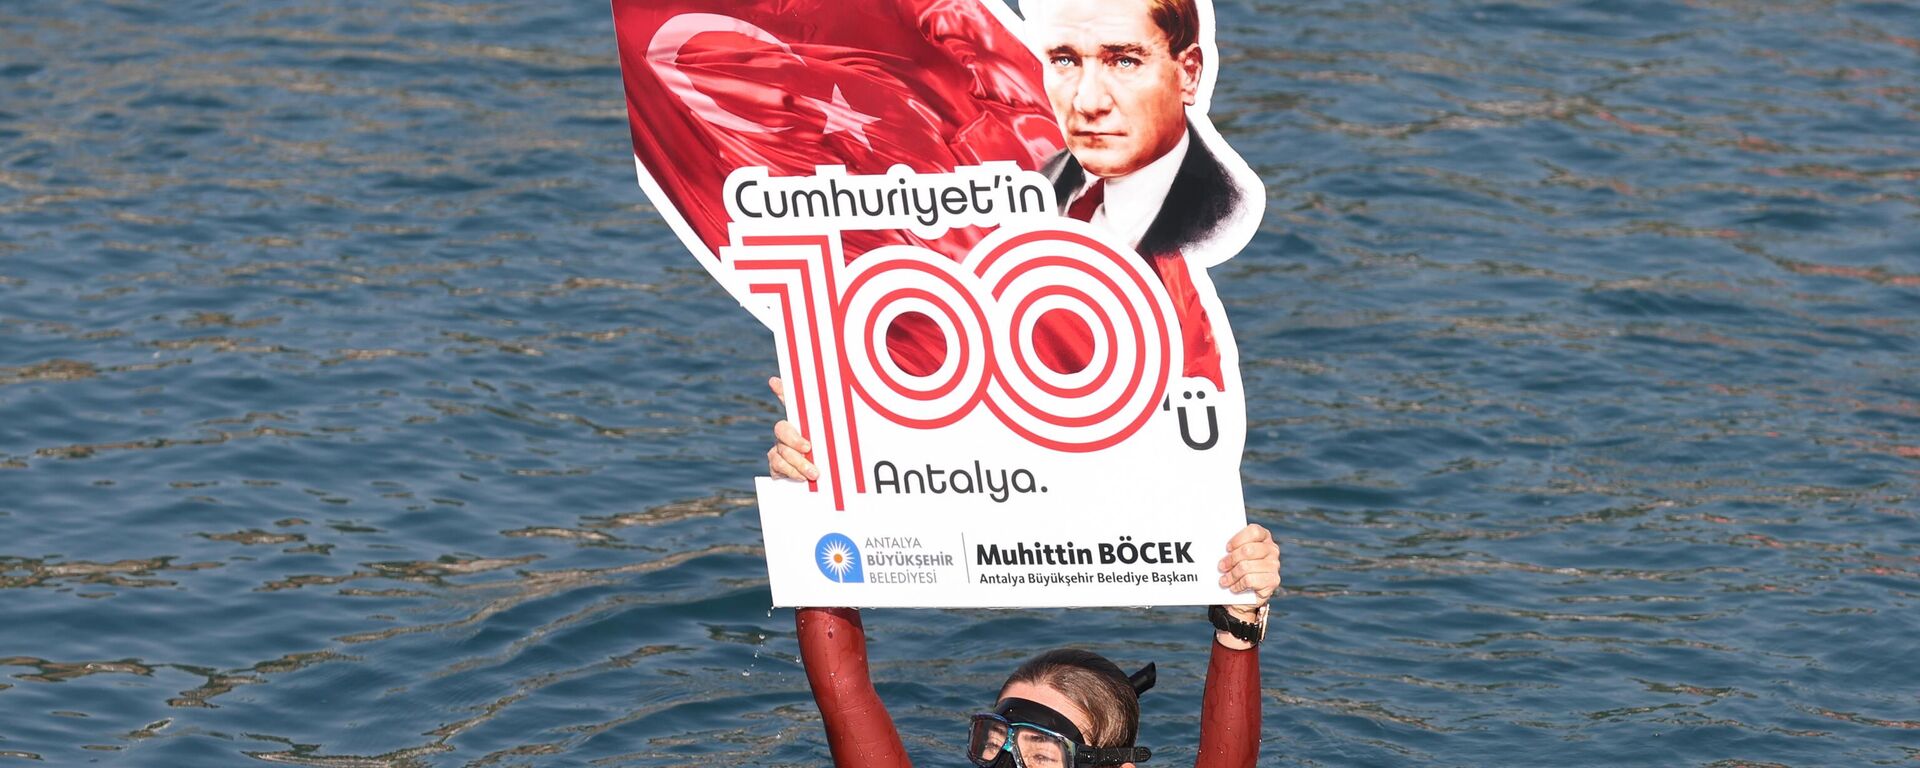 Türk Milli sporcu Şahika Ercümen, Cumhuriyet'in 100. yılı etkinlikleri kapsamında Antalya'da gerçekleştirdiği dalışta Türk bayrağı açtı. - Sputnik Türkiye, 1920, 28.10.2023